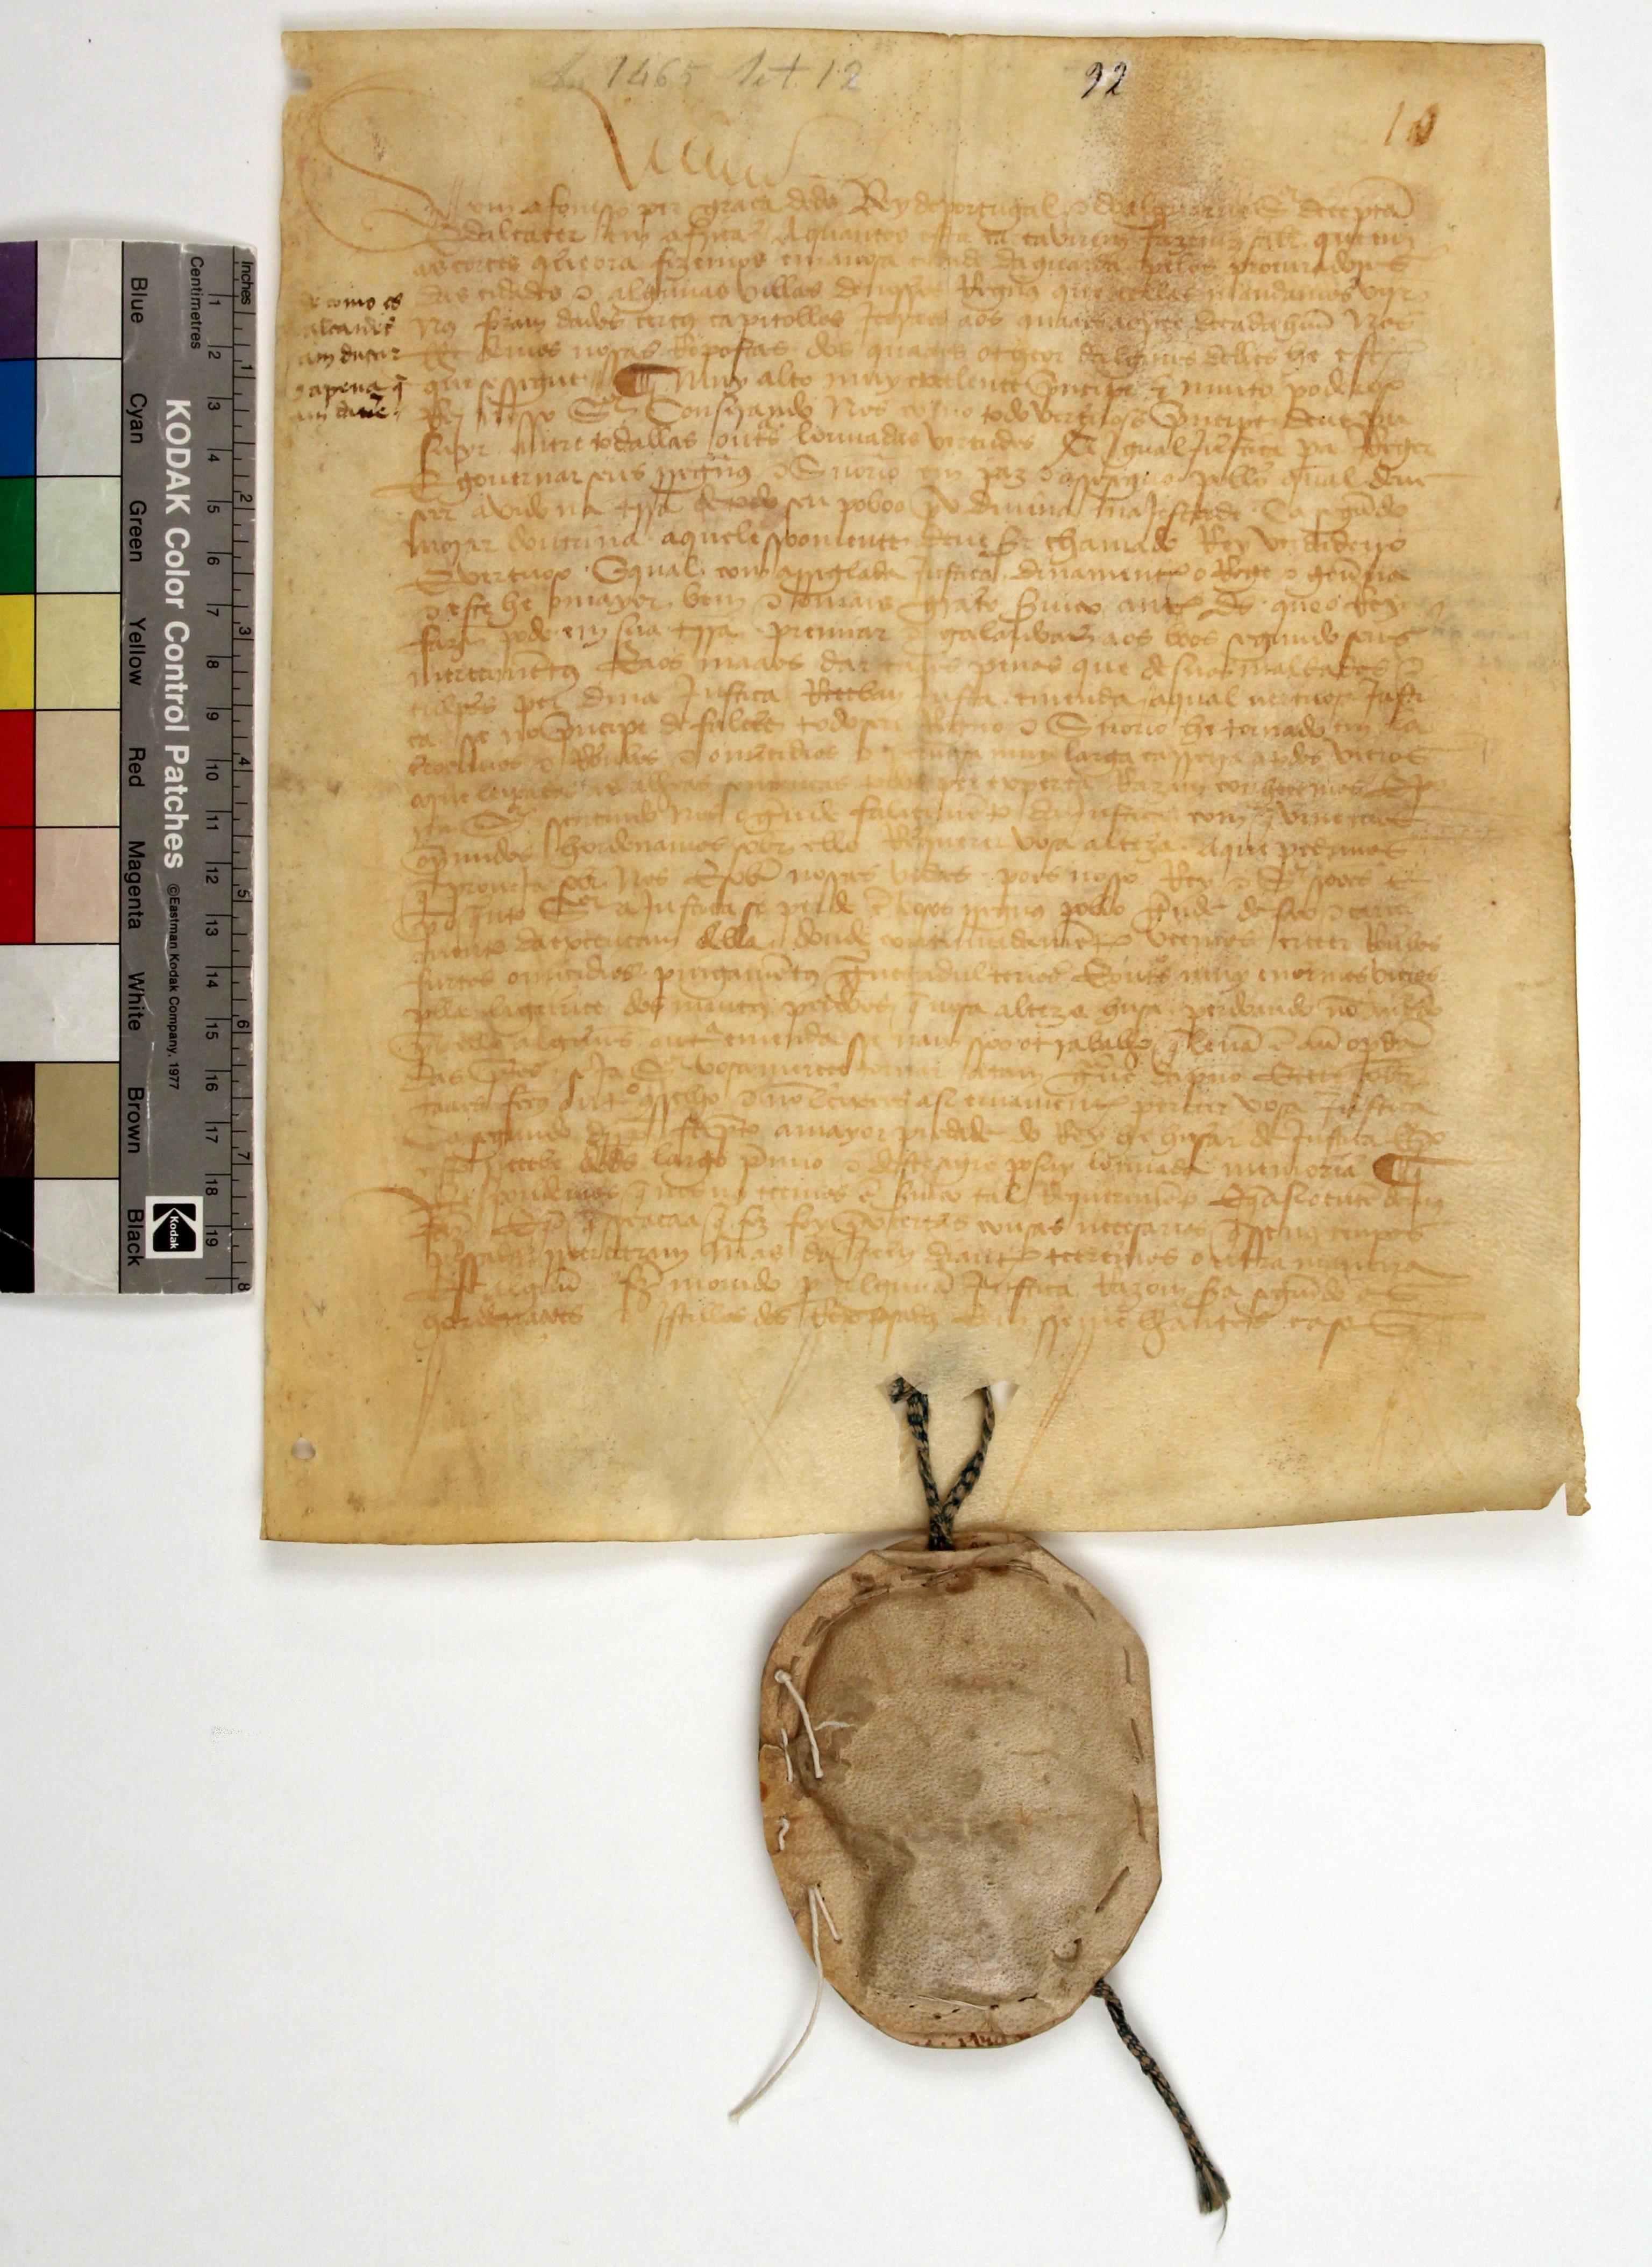 [Traslado de capítulos gerais apresentados nas Cortes da Guarda de 1465 solicitados por João Álvares, cavaleiro, em nome do concelho do Porto]